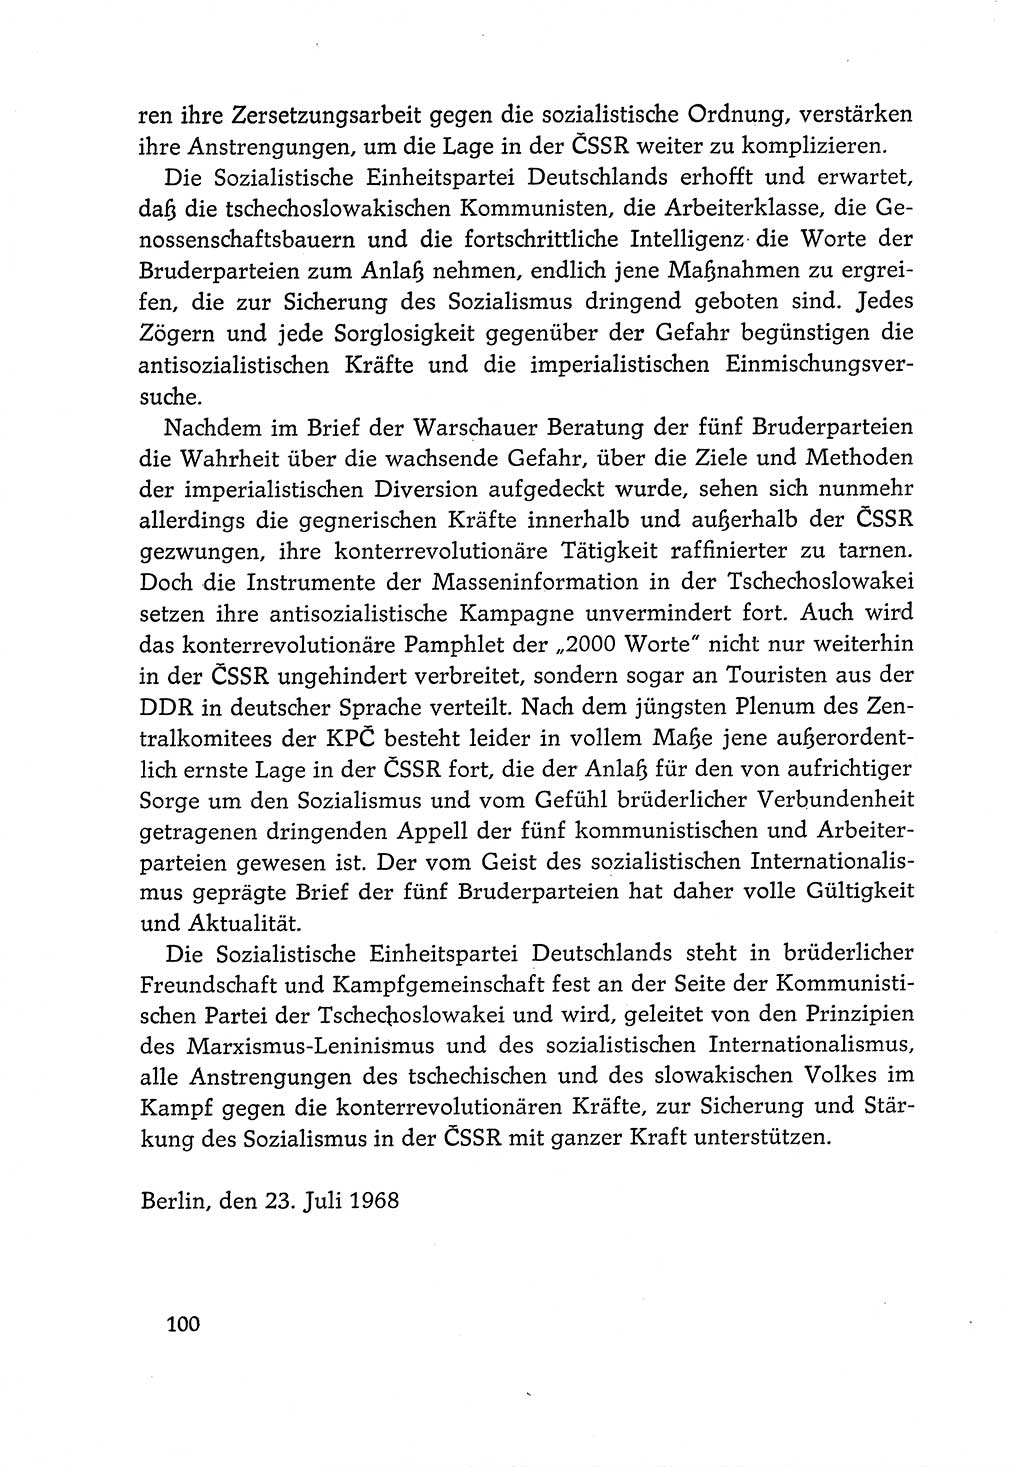 Dokumente der Sozialistischen Einheitspartei Deutschlands (SED) [Deutsche Demokratische Republik (DDR)] 1968-1969, Seite 100 (Dok. SED DDR 1968-1969, S. 100)